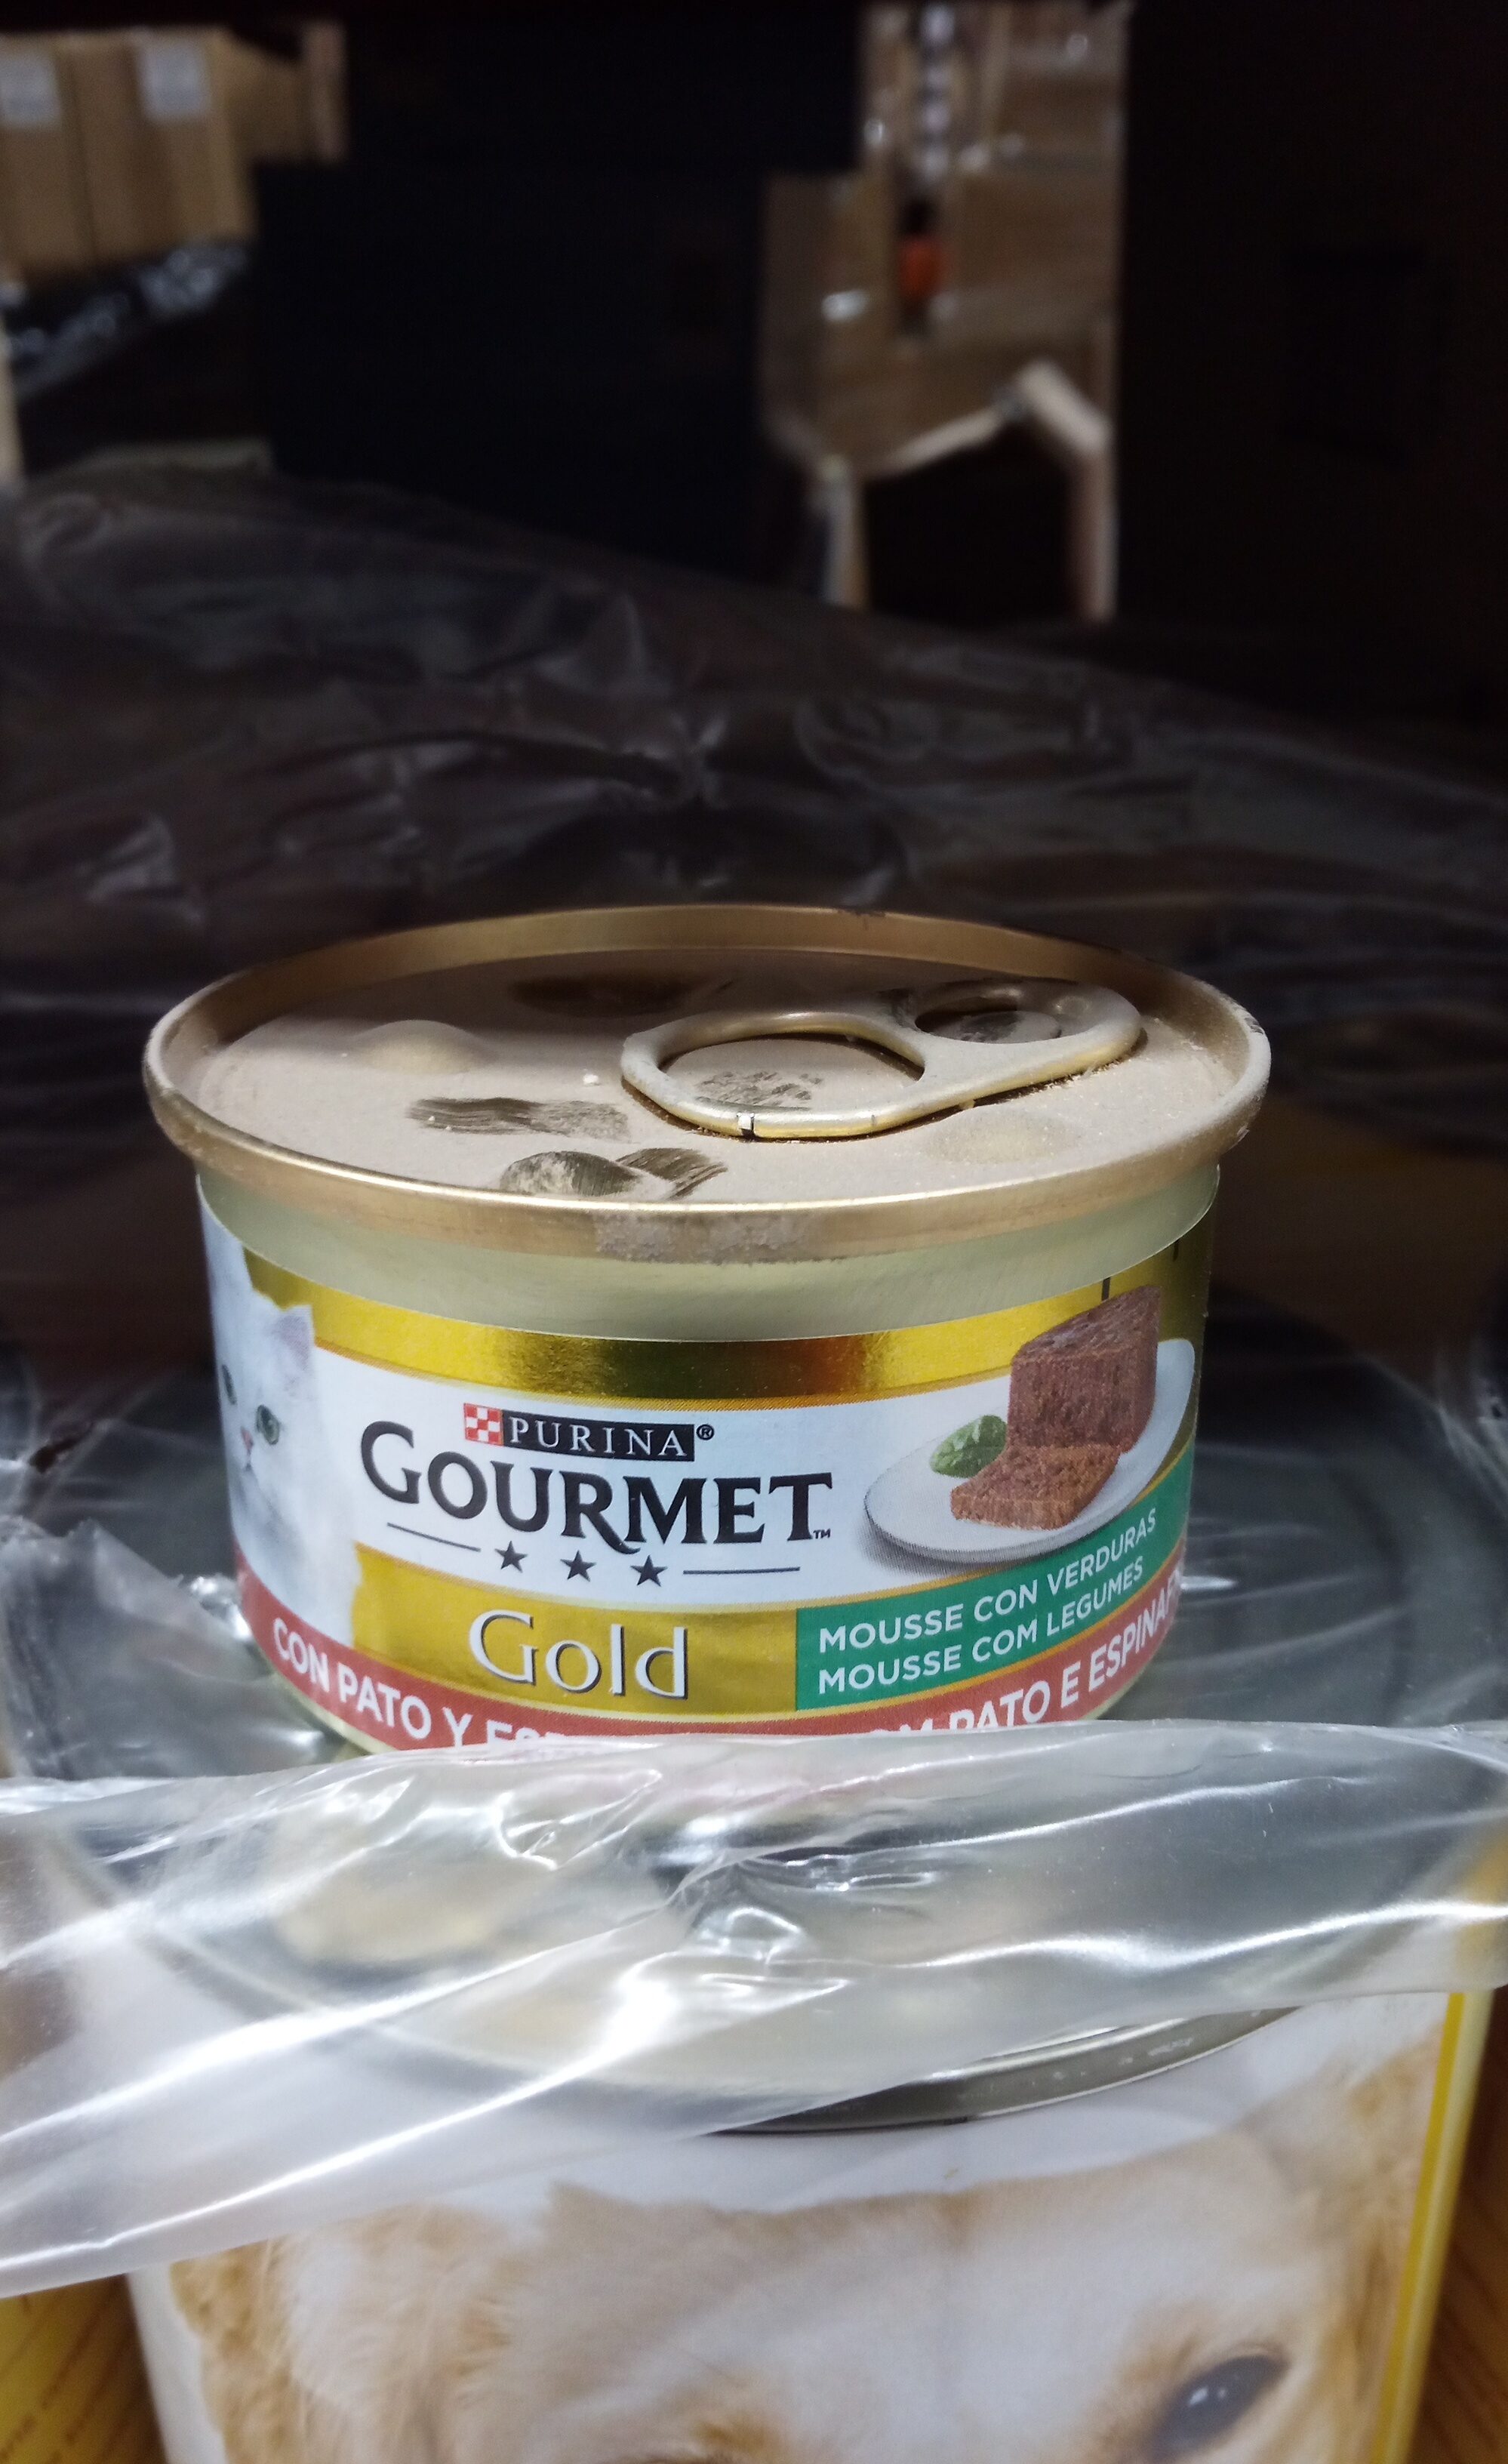 Gourmet gold pato y espinacas - Product - es